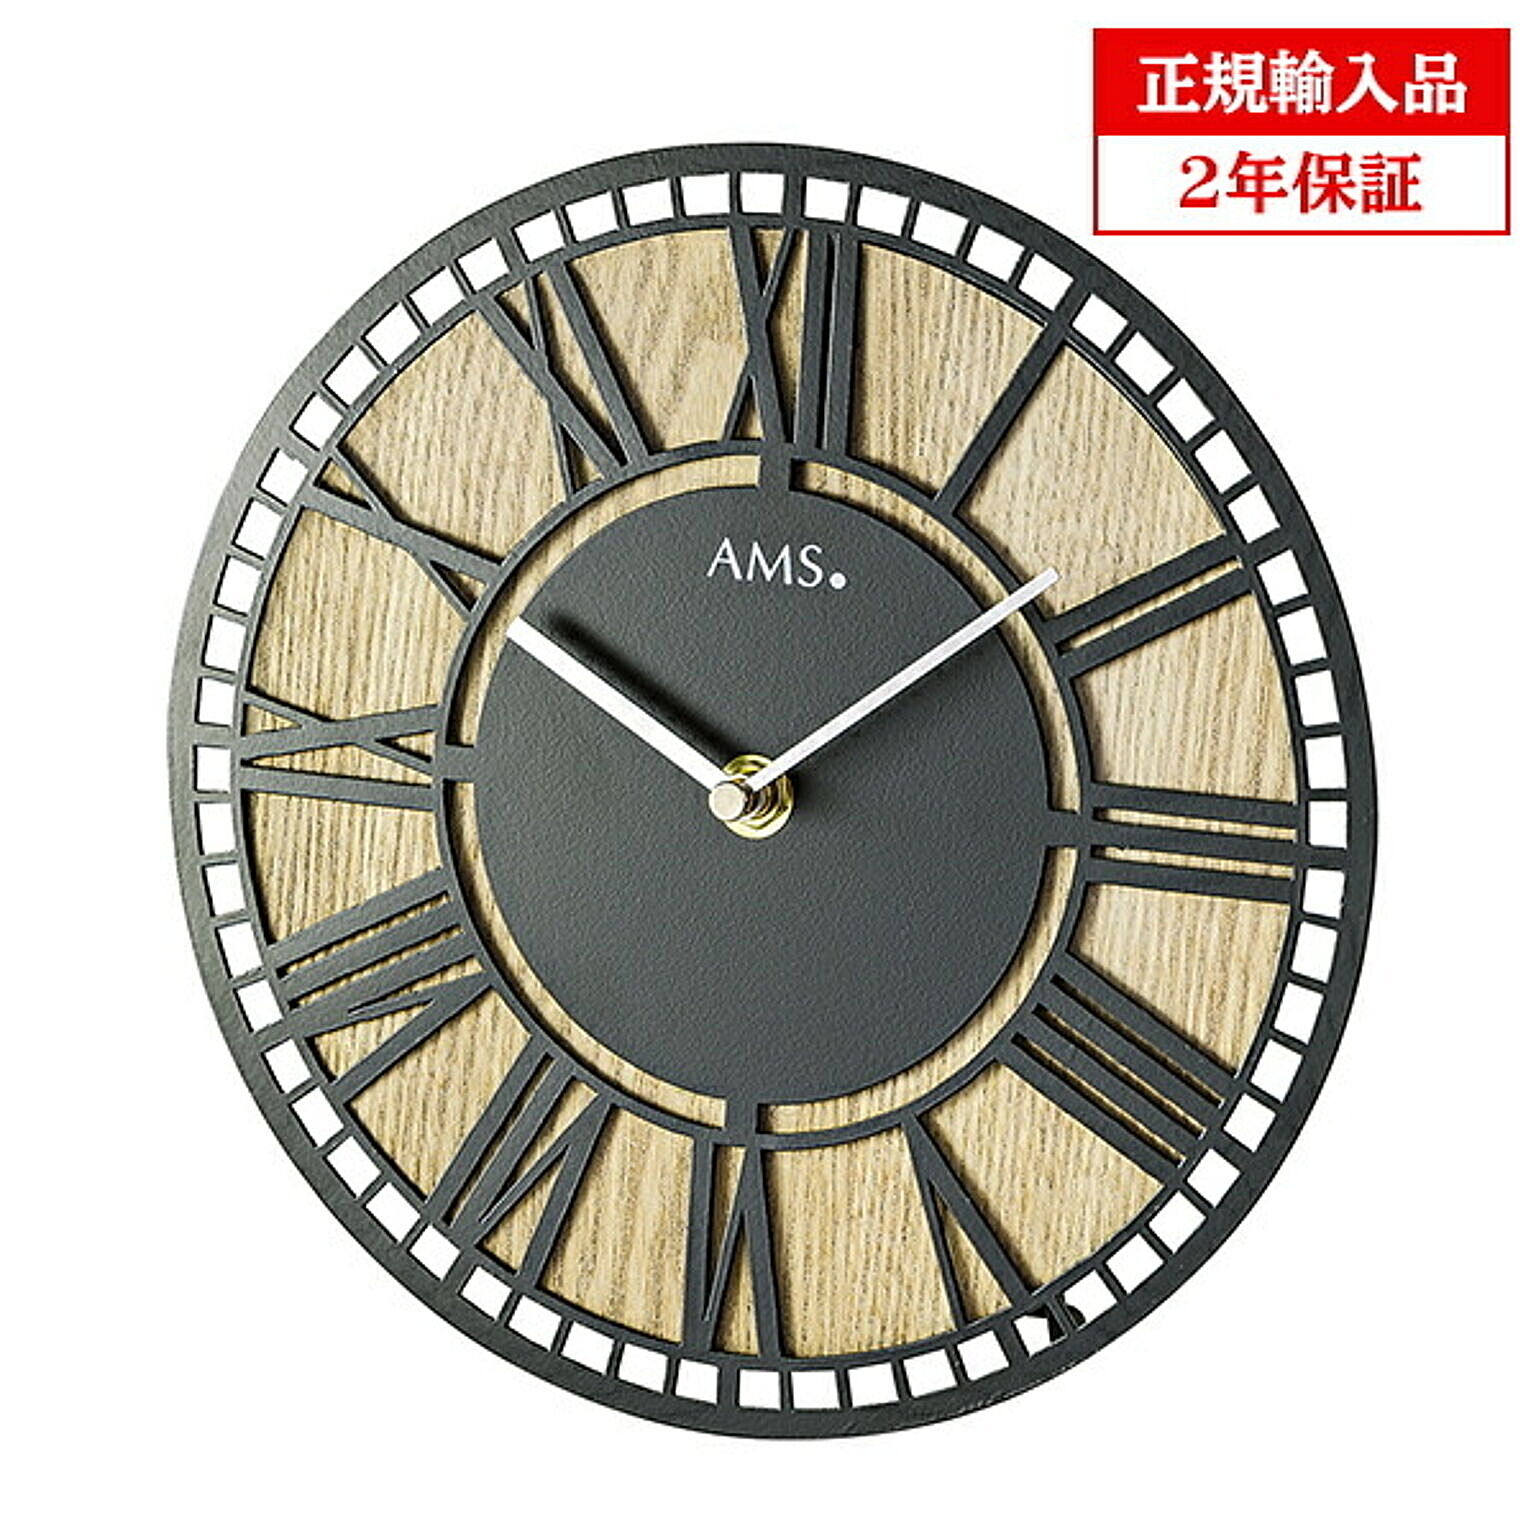 アームス社 AMS 1231 クオーツ 掛け時計 (掛時計) ドイツ製 【正規輸入品】【メーカー保証2年】